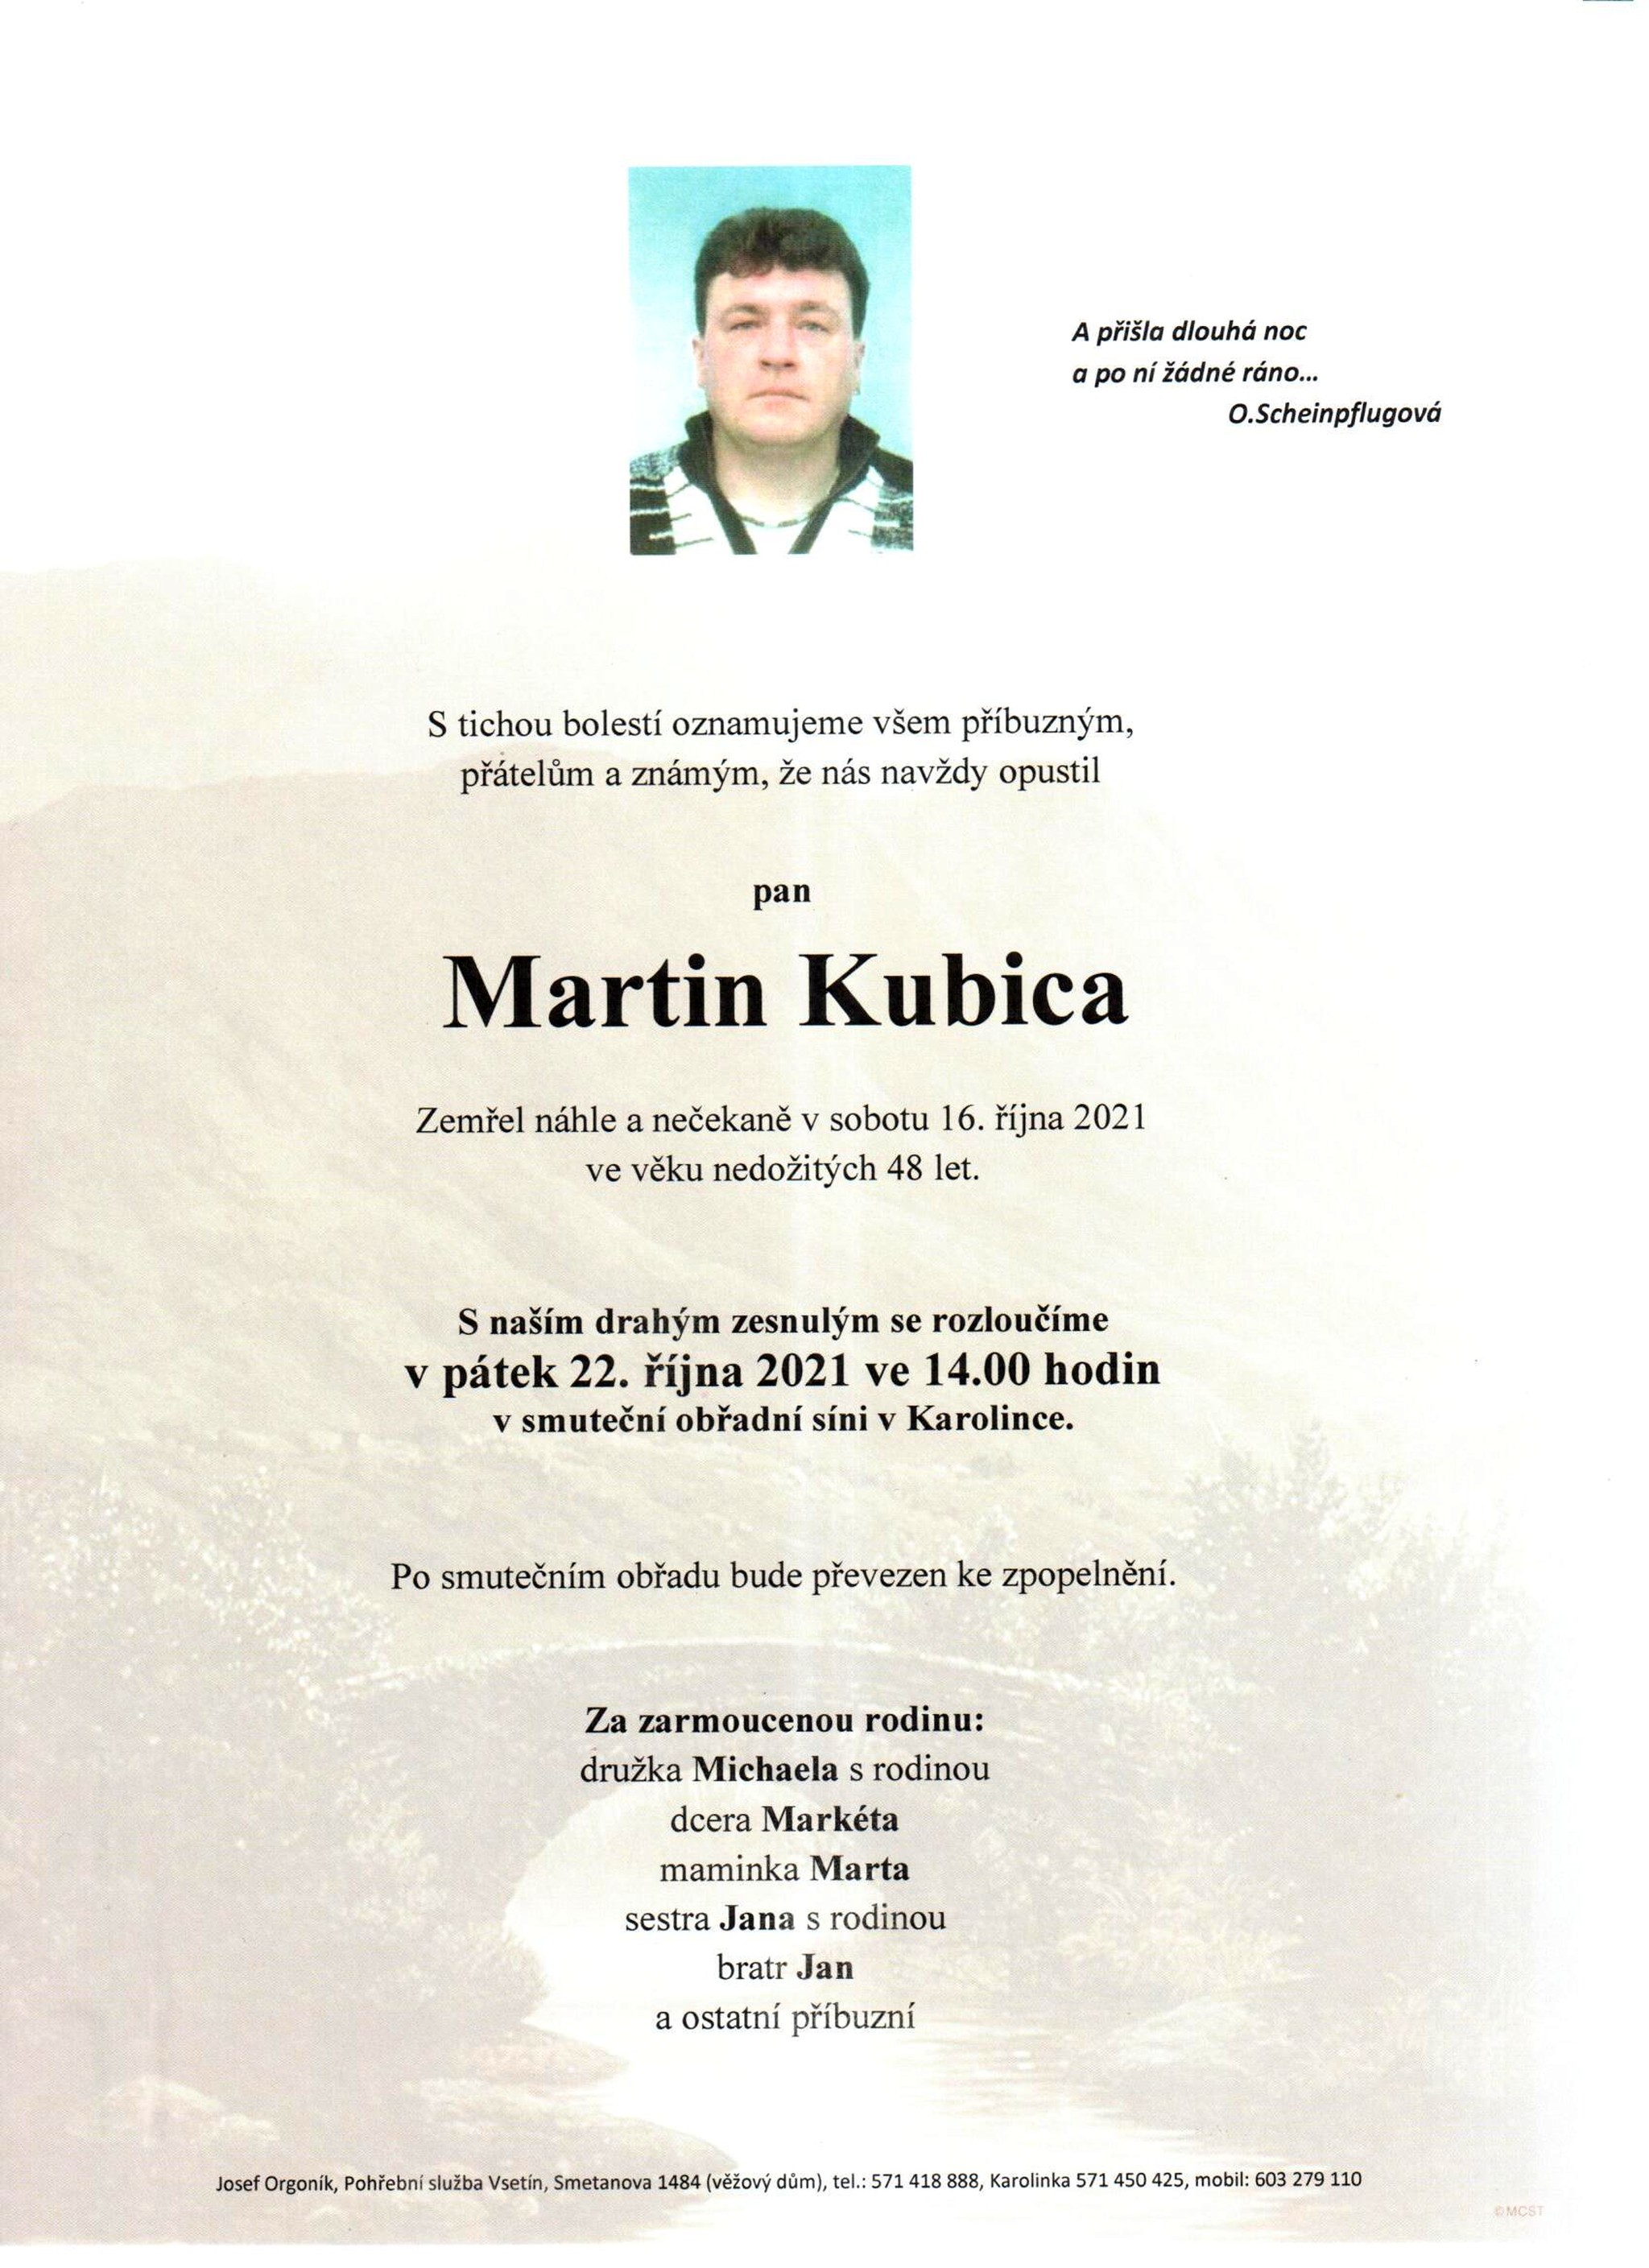 Martin Kubica